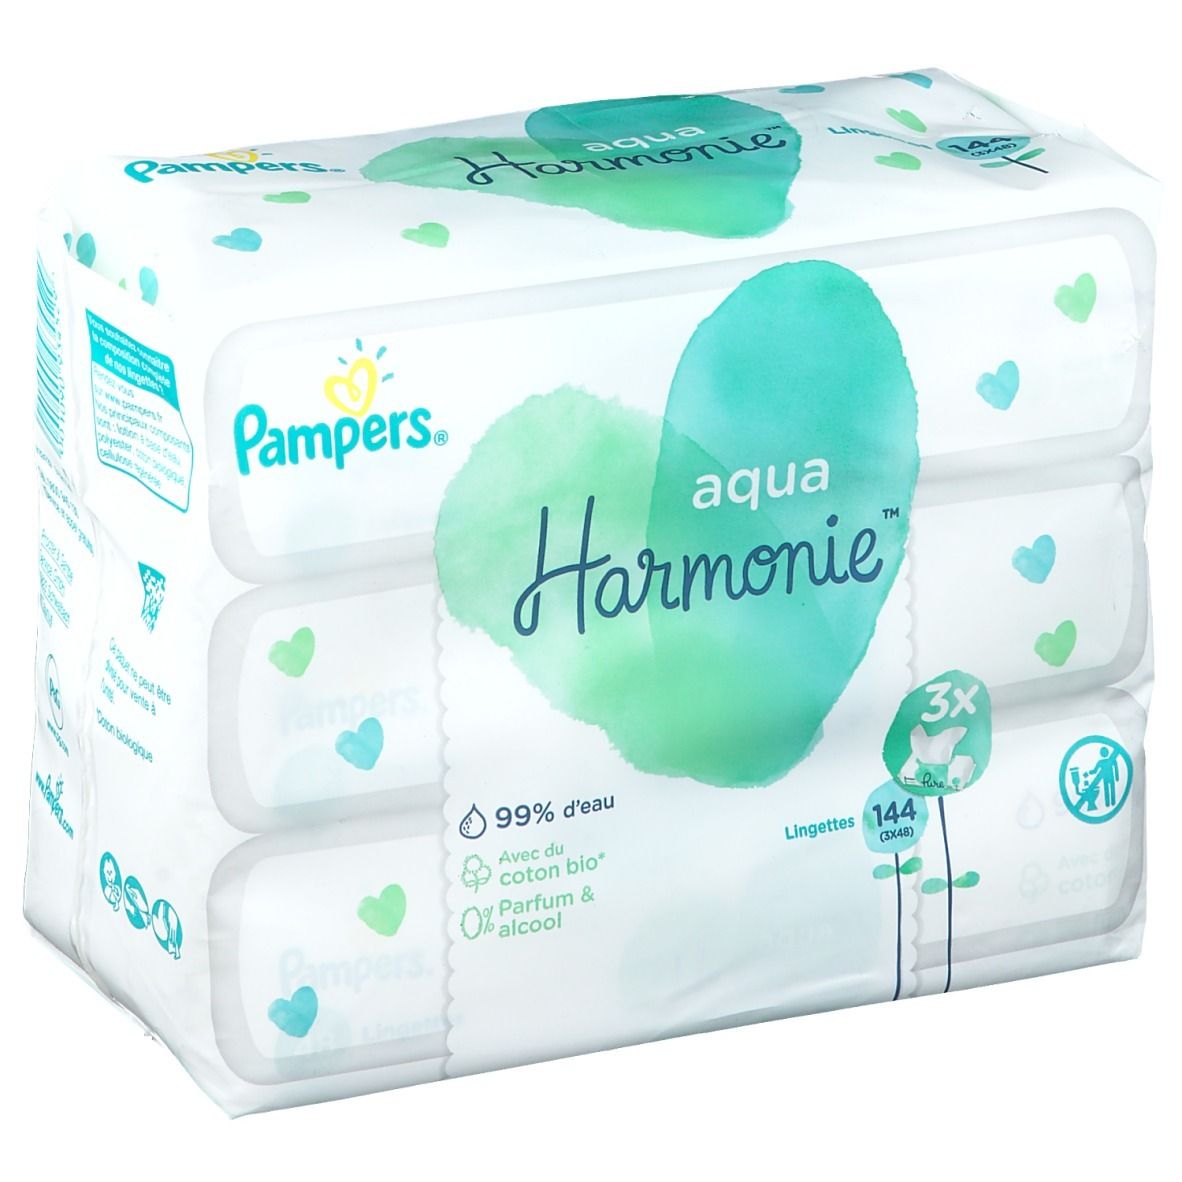 Lingettes Pampers Harmonie Aqua acheter à prix réduit